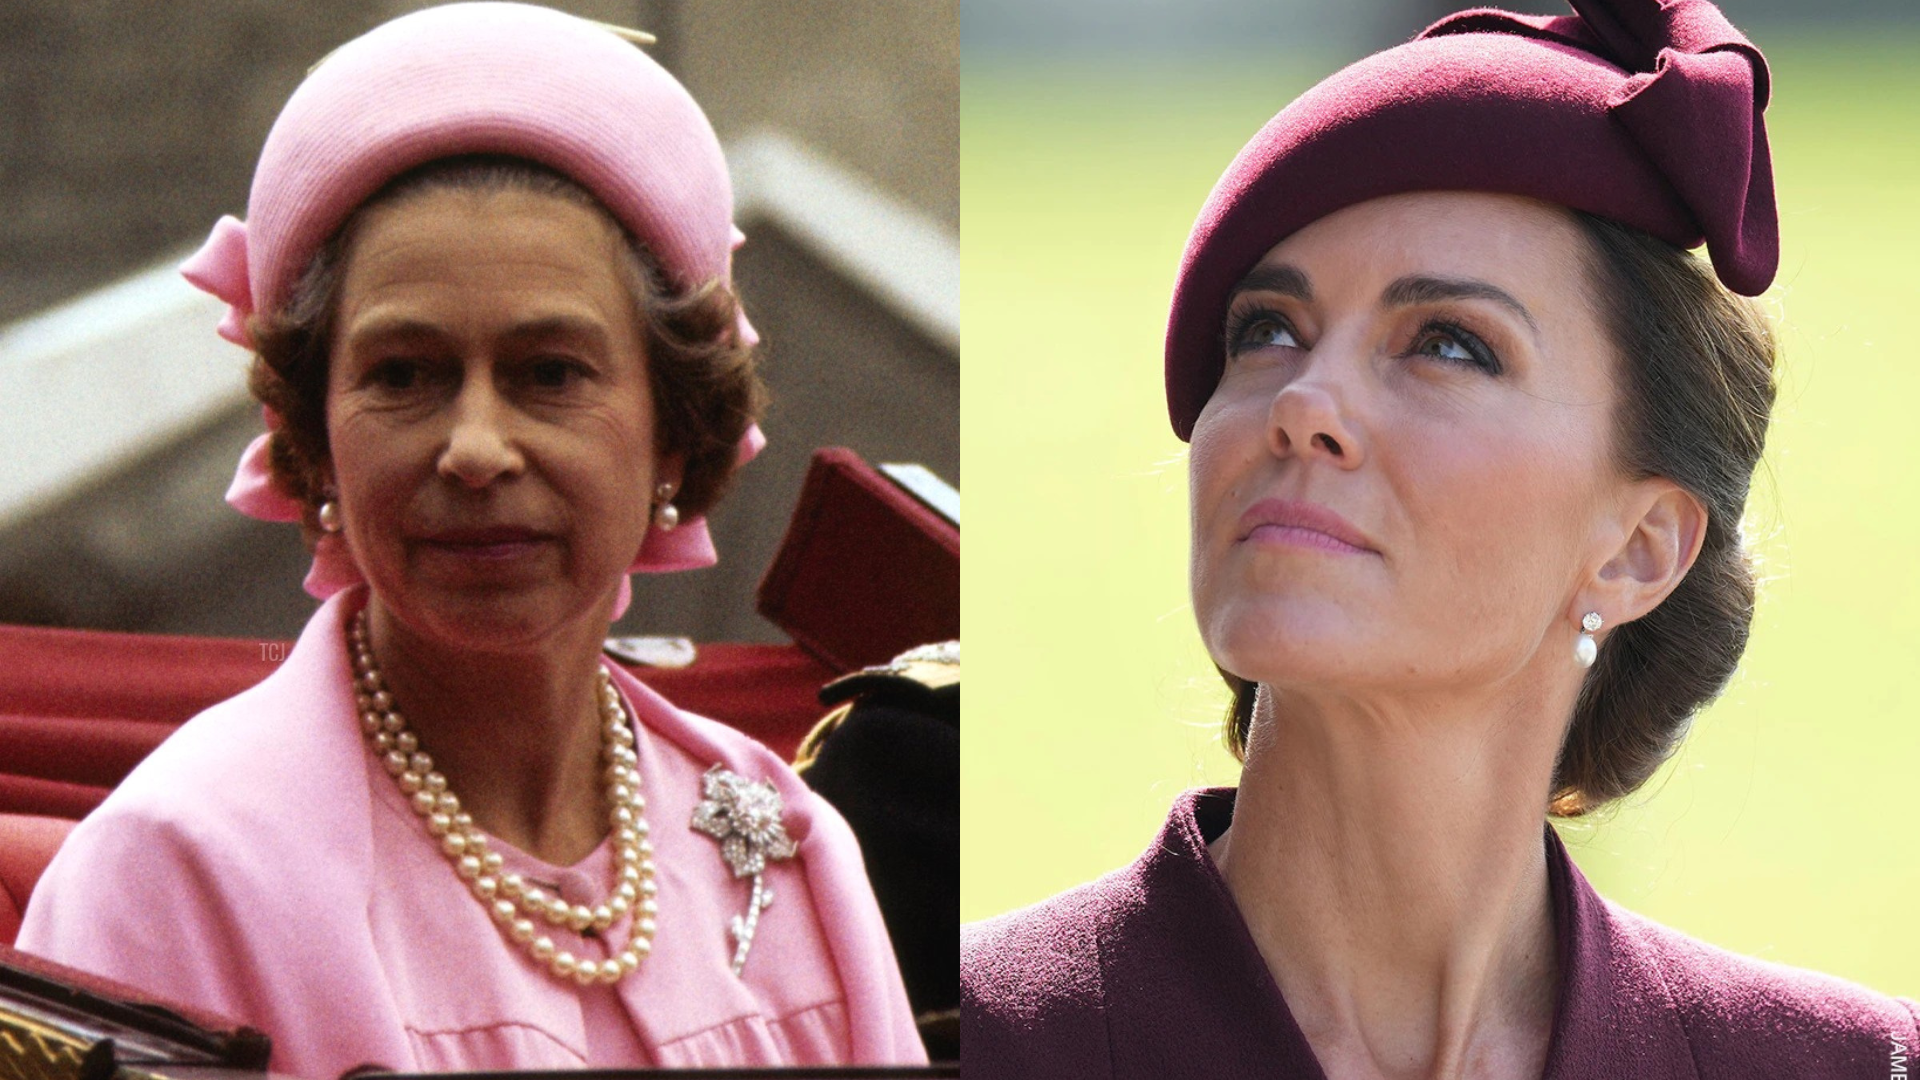 Công nương Kate Middleton và bộ sưu tập trang sức độc quyền, được thừa hưởng từ Nữ hoàng Elizabeth II